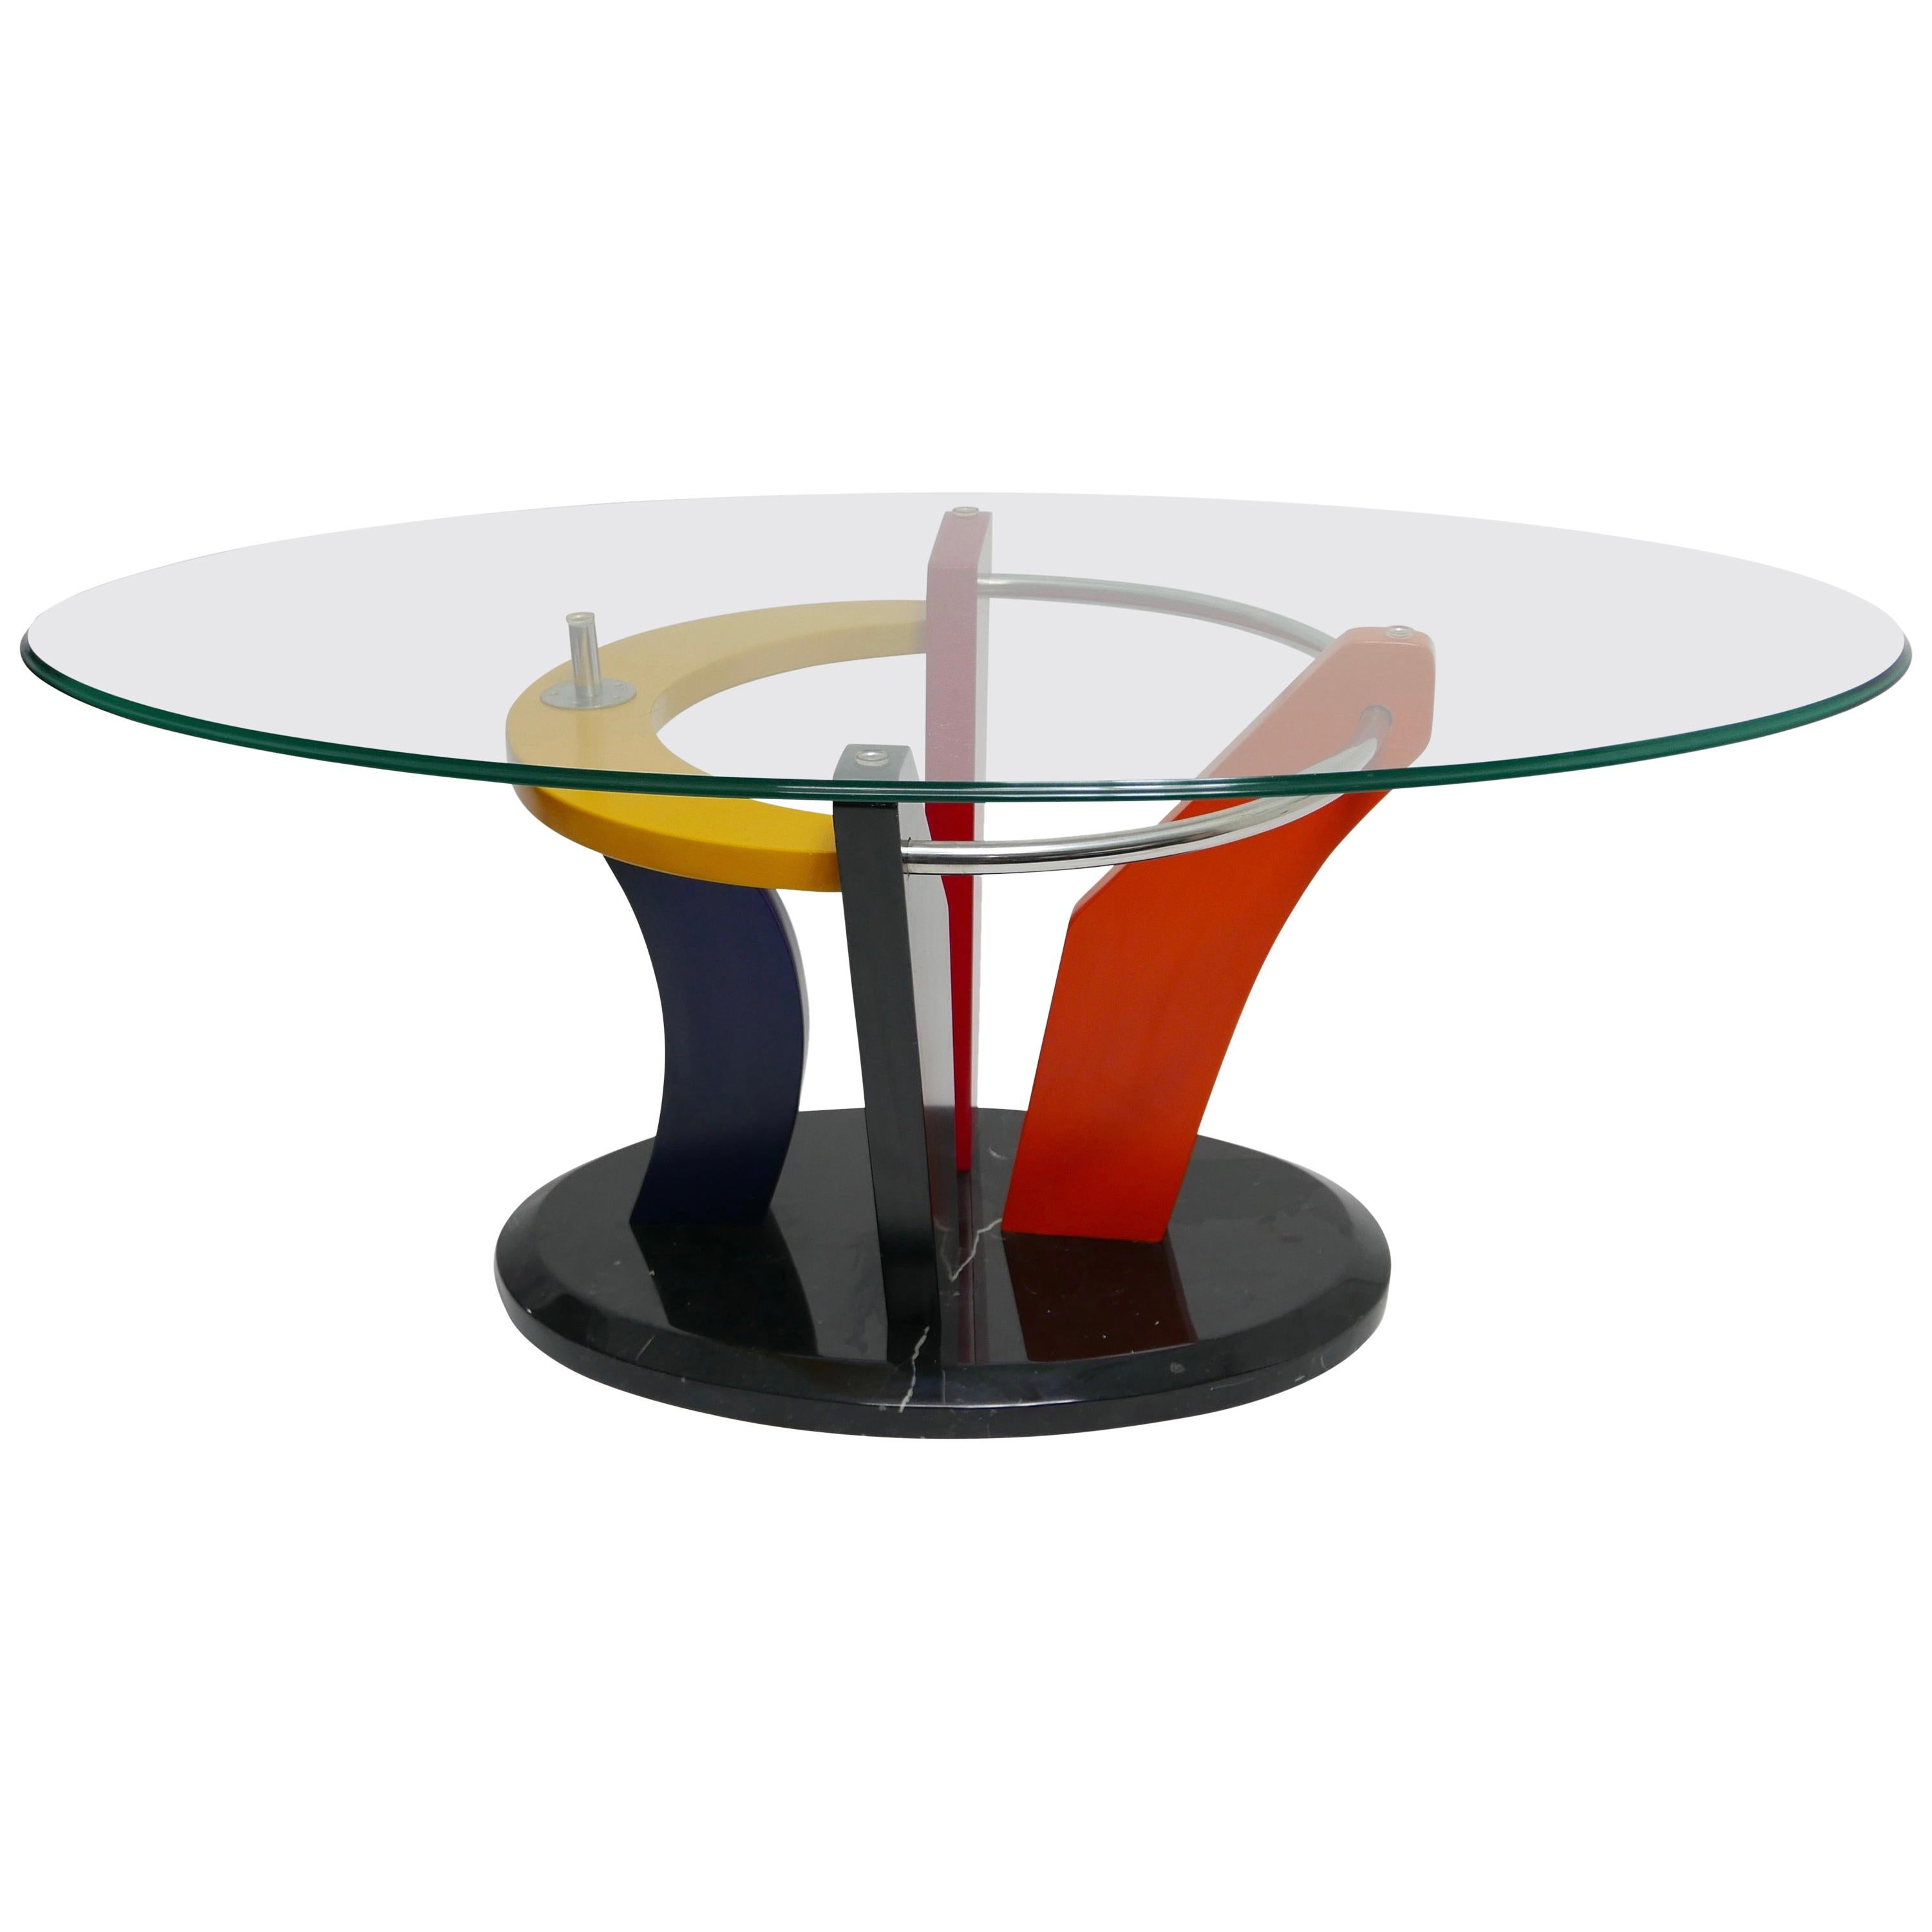 Table basse ovale colorée de style Memphis avec base en marbre noir, vers 1980